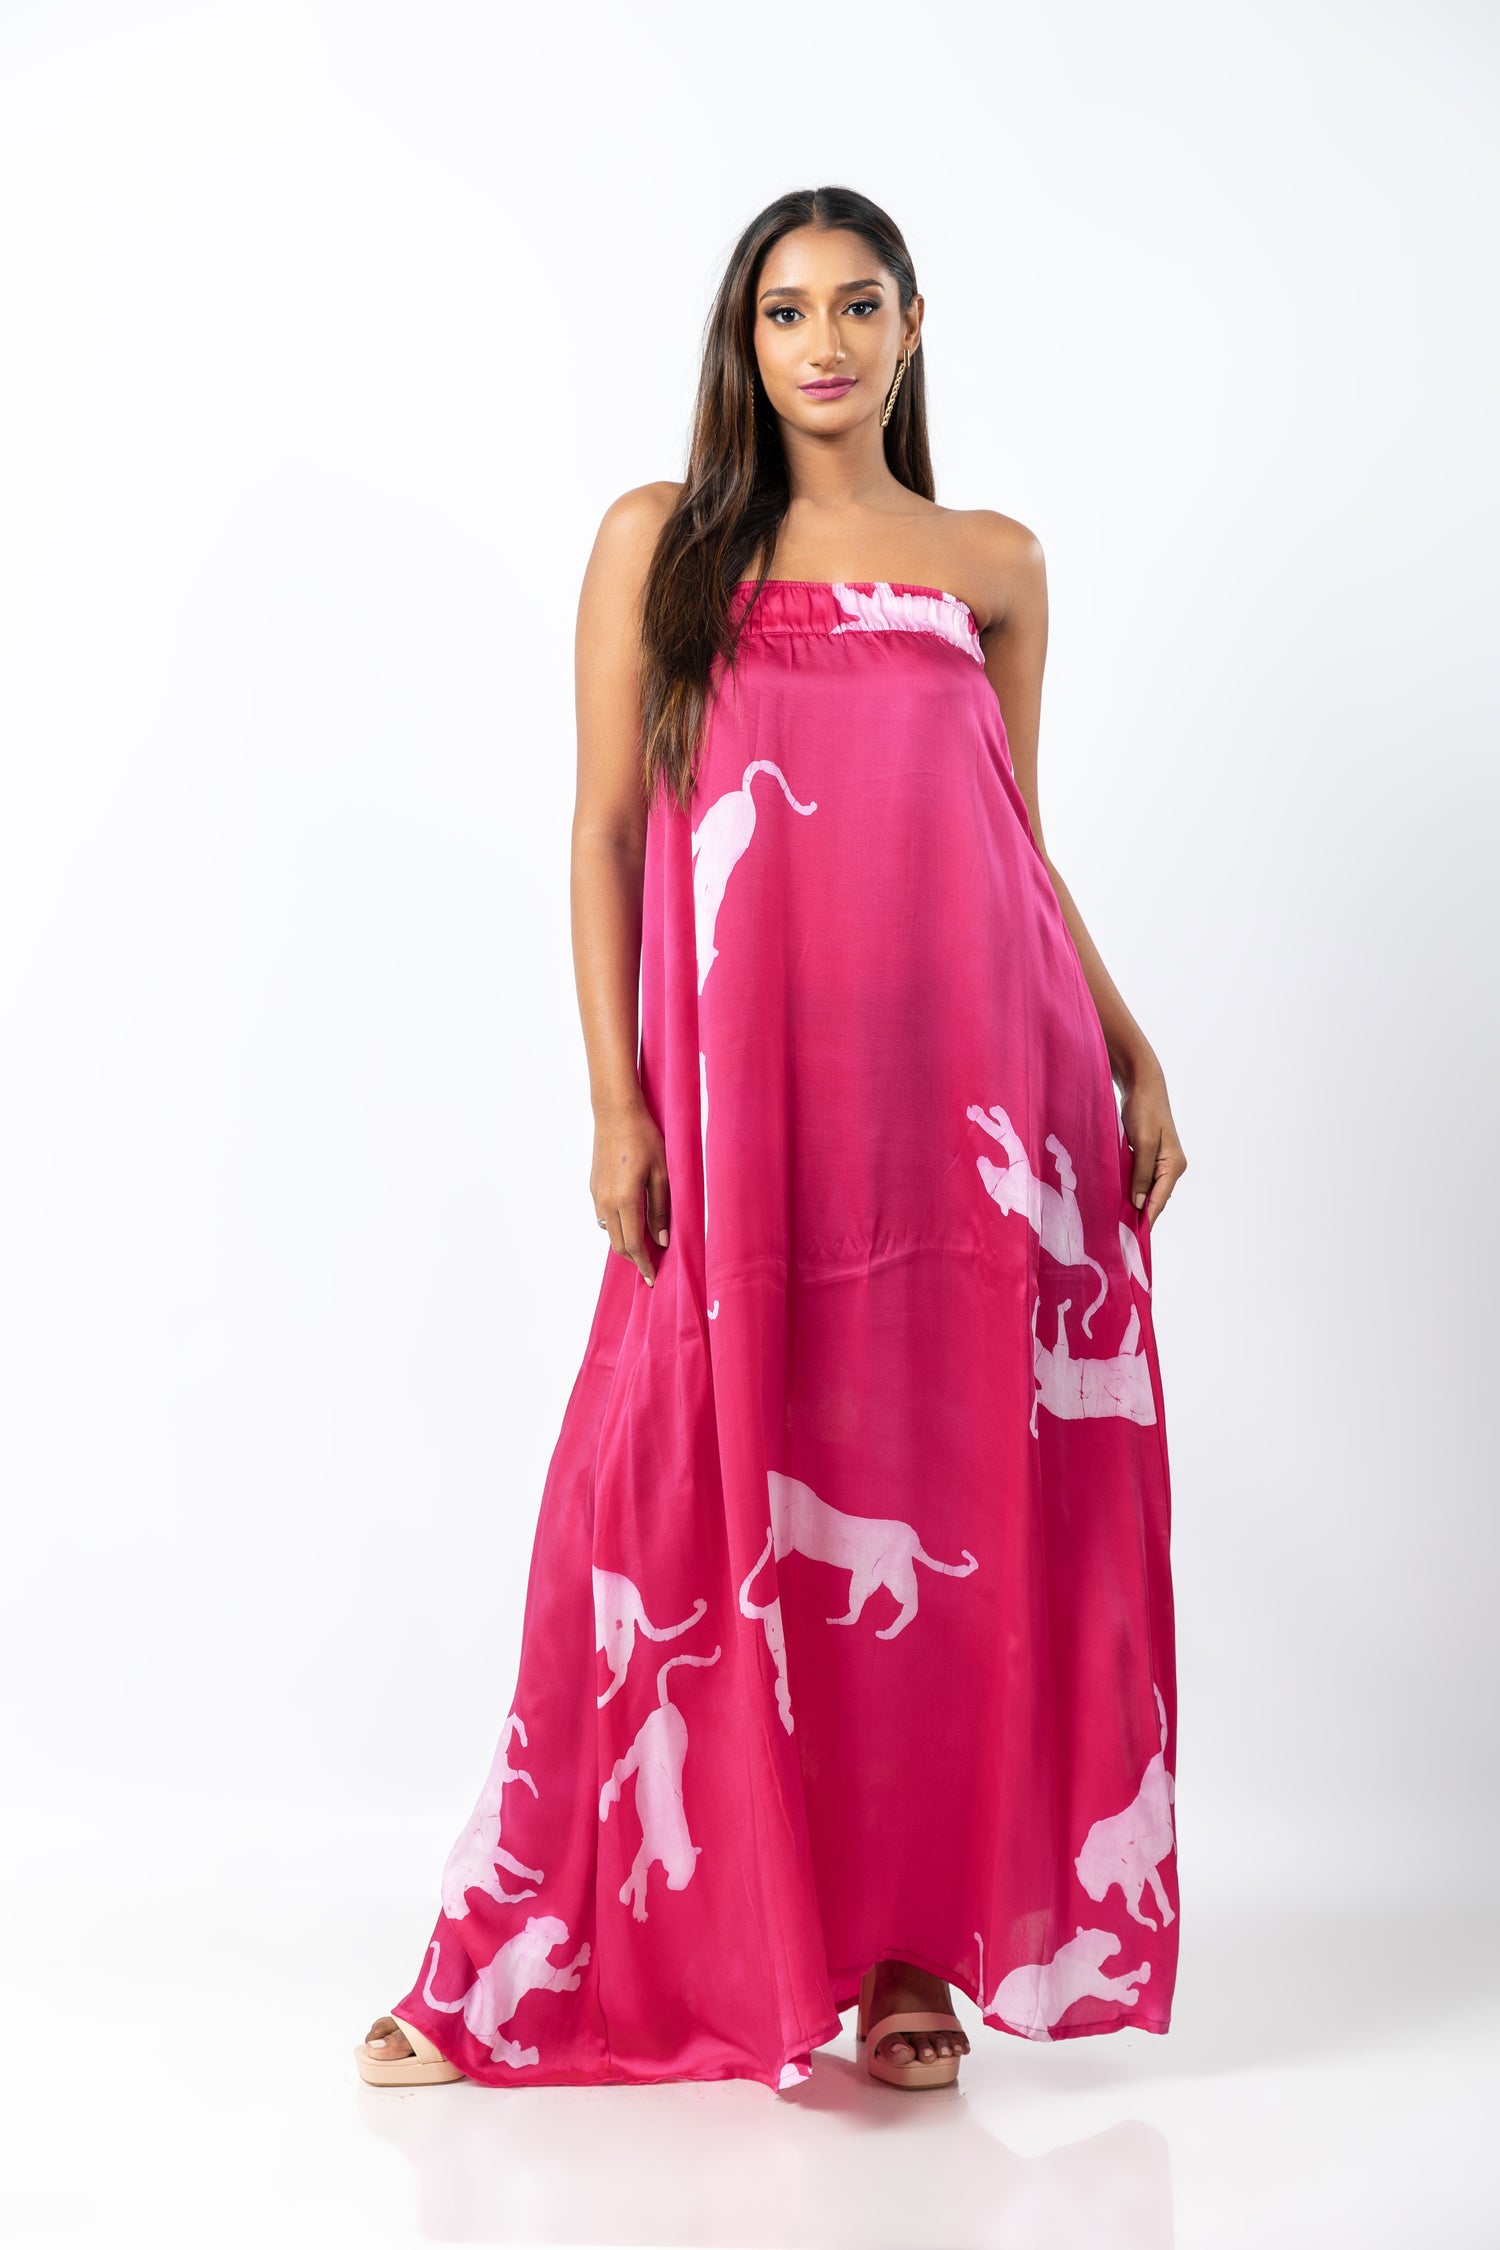 Ravishing Pink Tiger Tube Dress